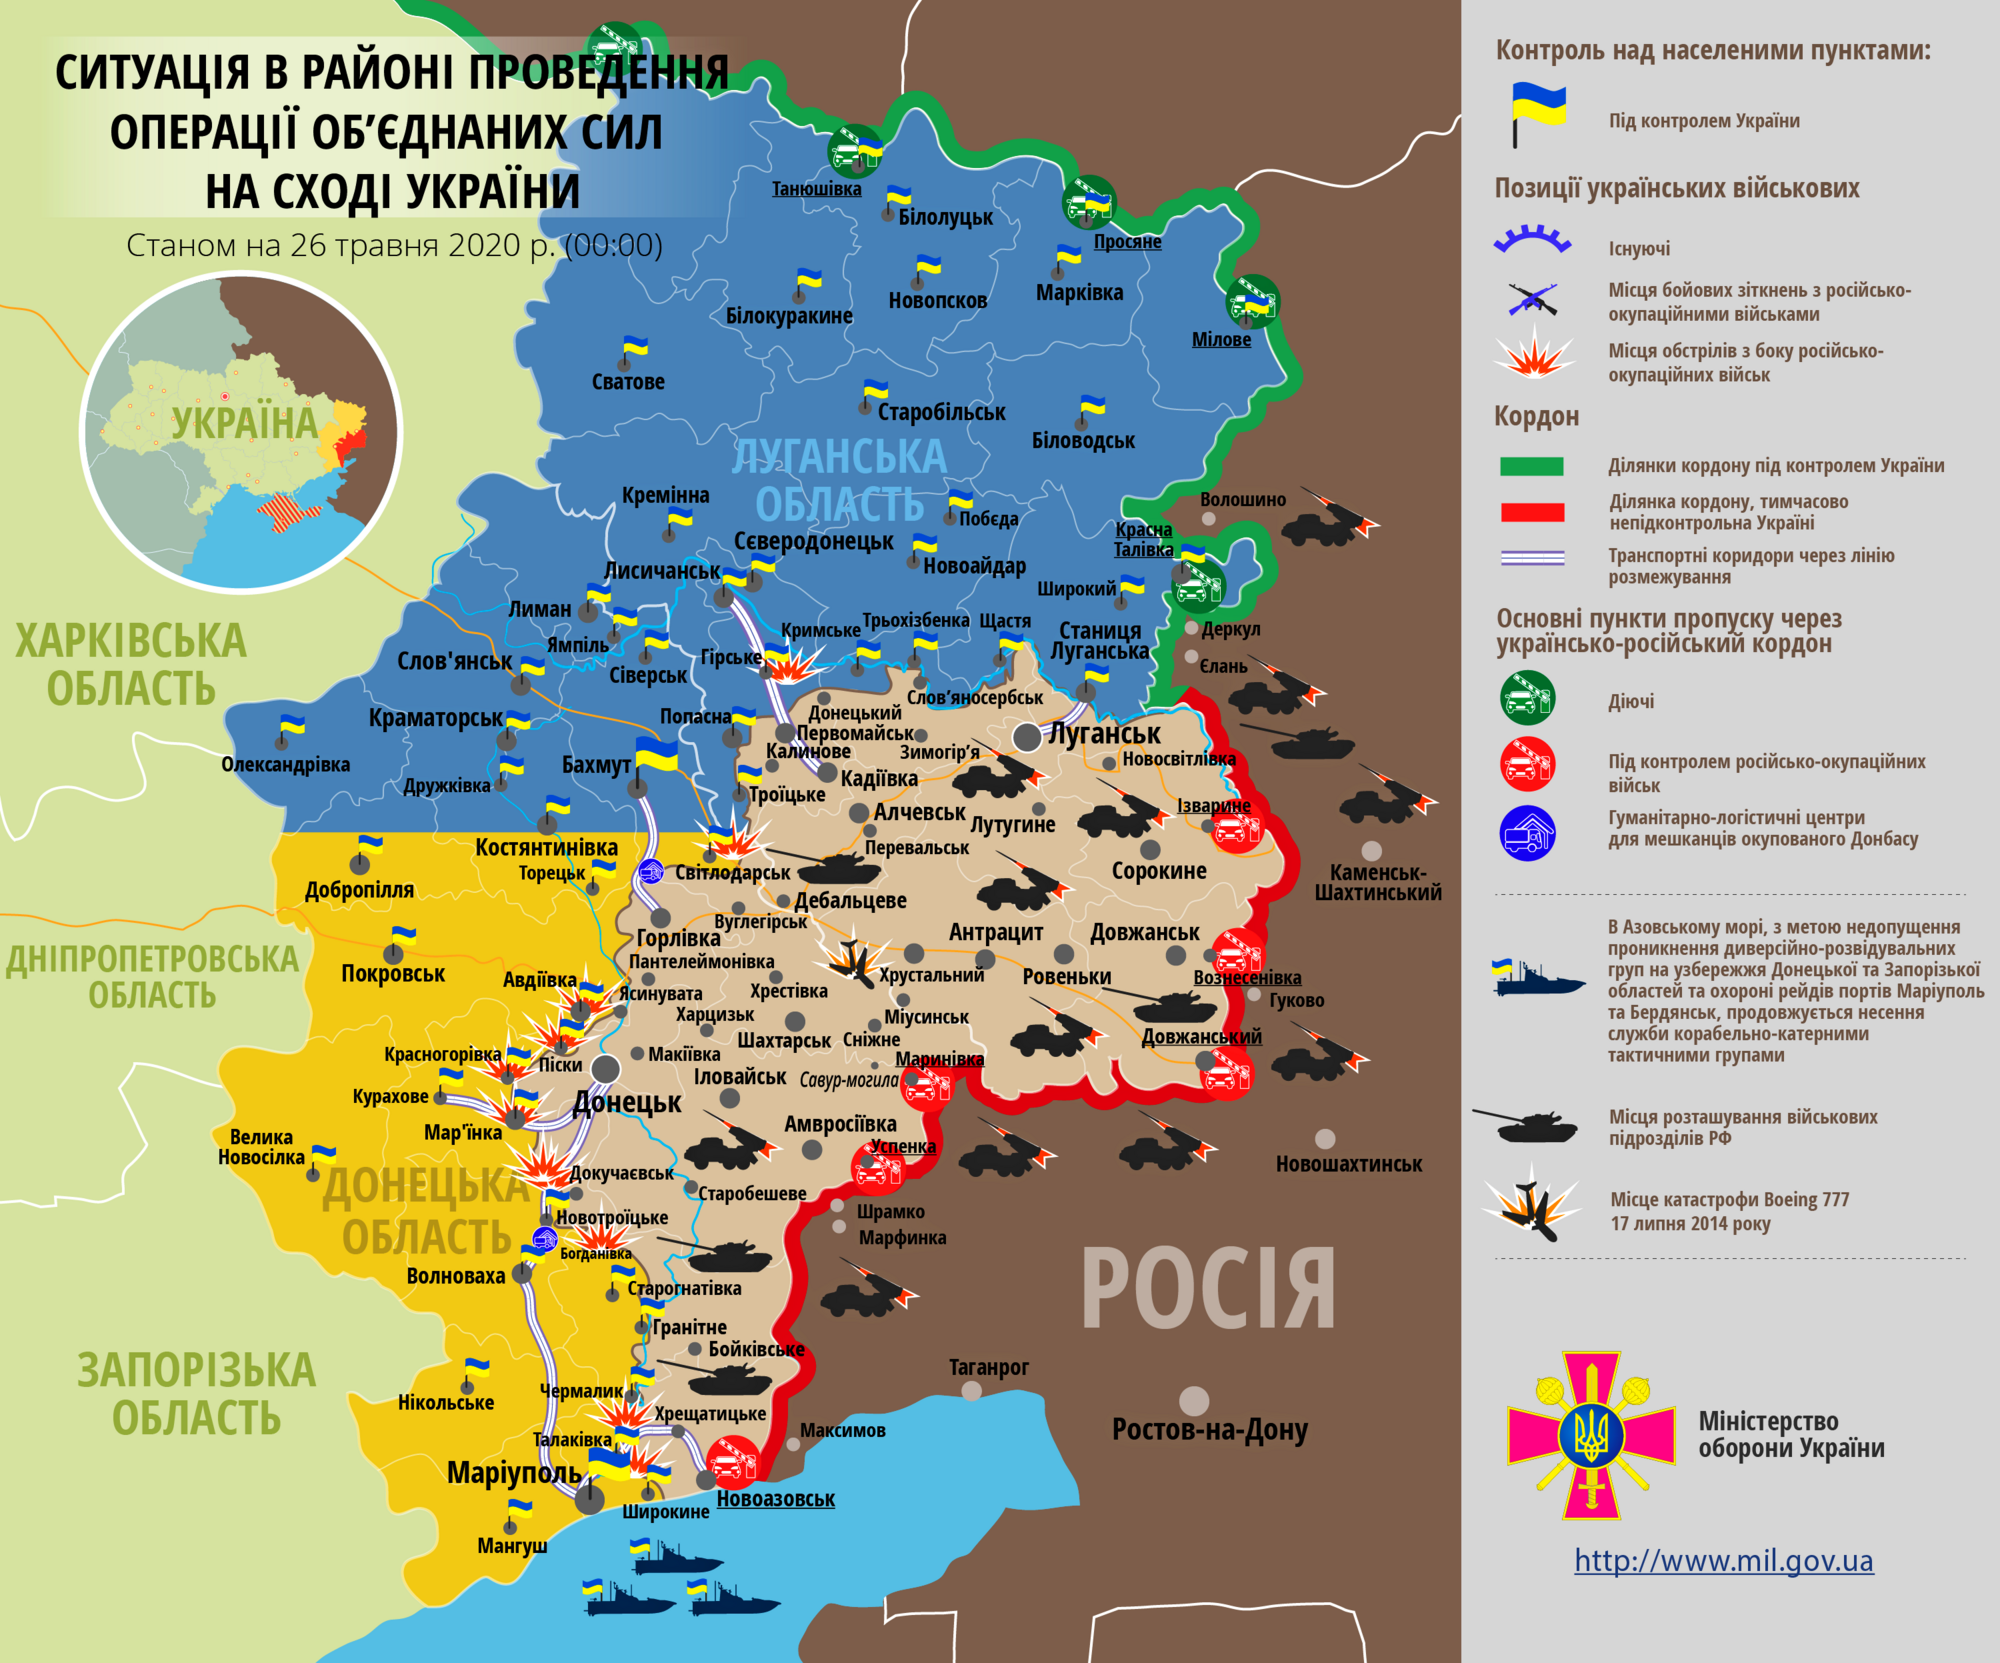 Ситуация в зоне проведения ООС на Донбассе 26 мая